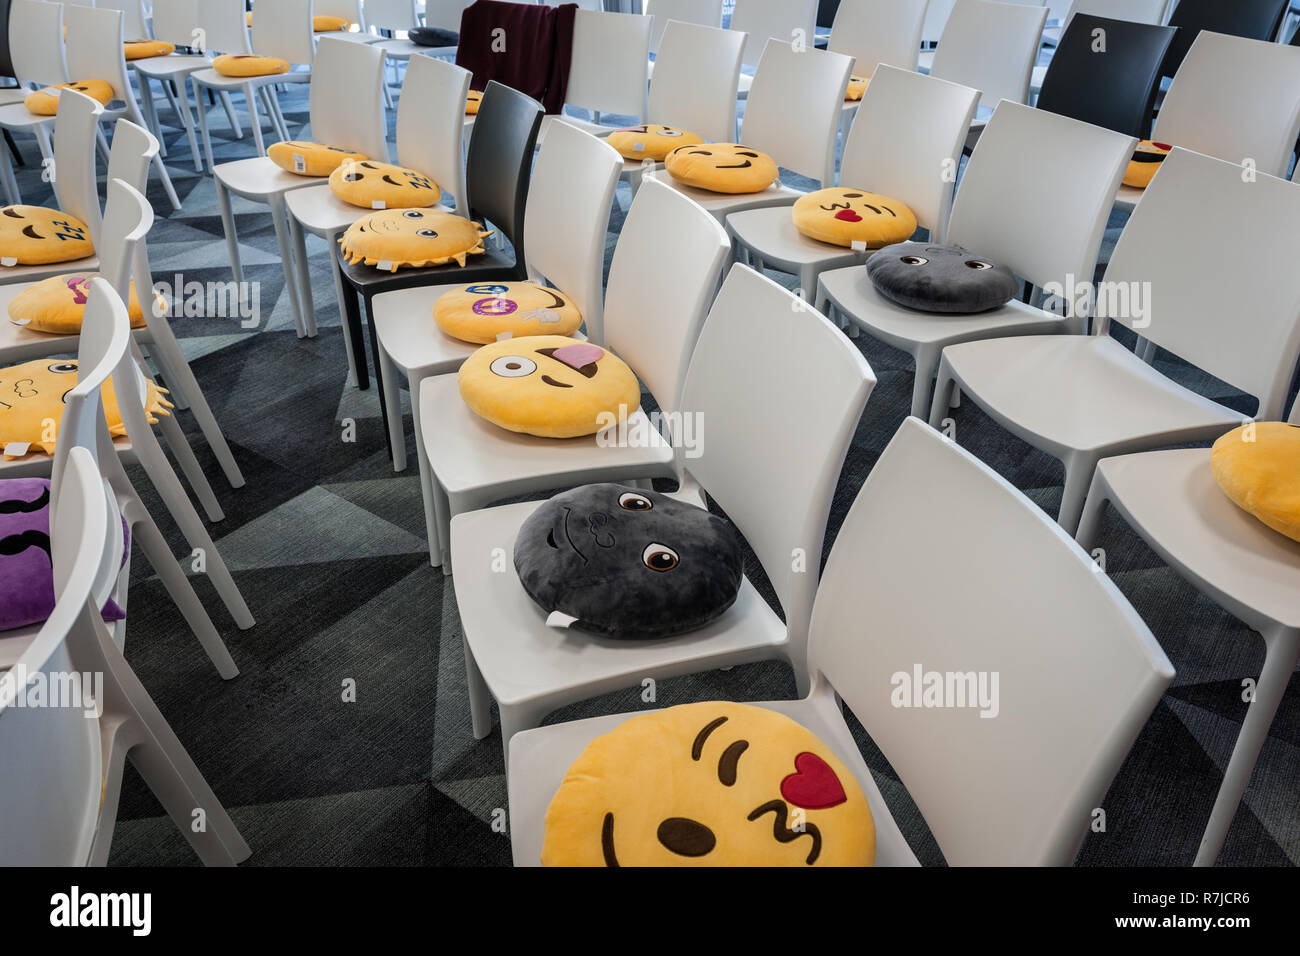 Coussins emoji sur des chaises Photo Stock - Alamy